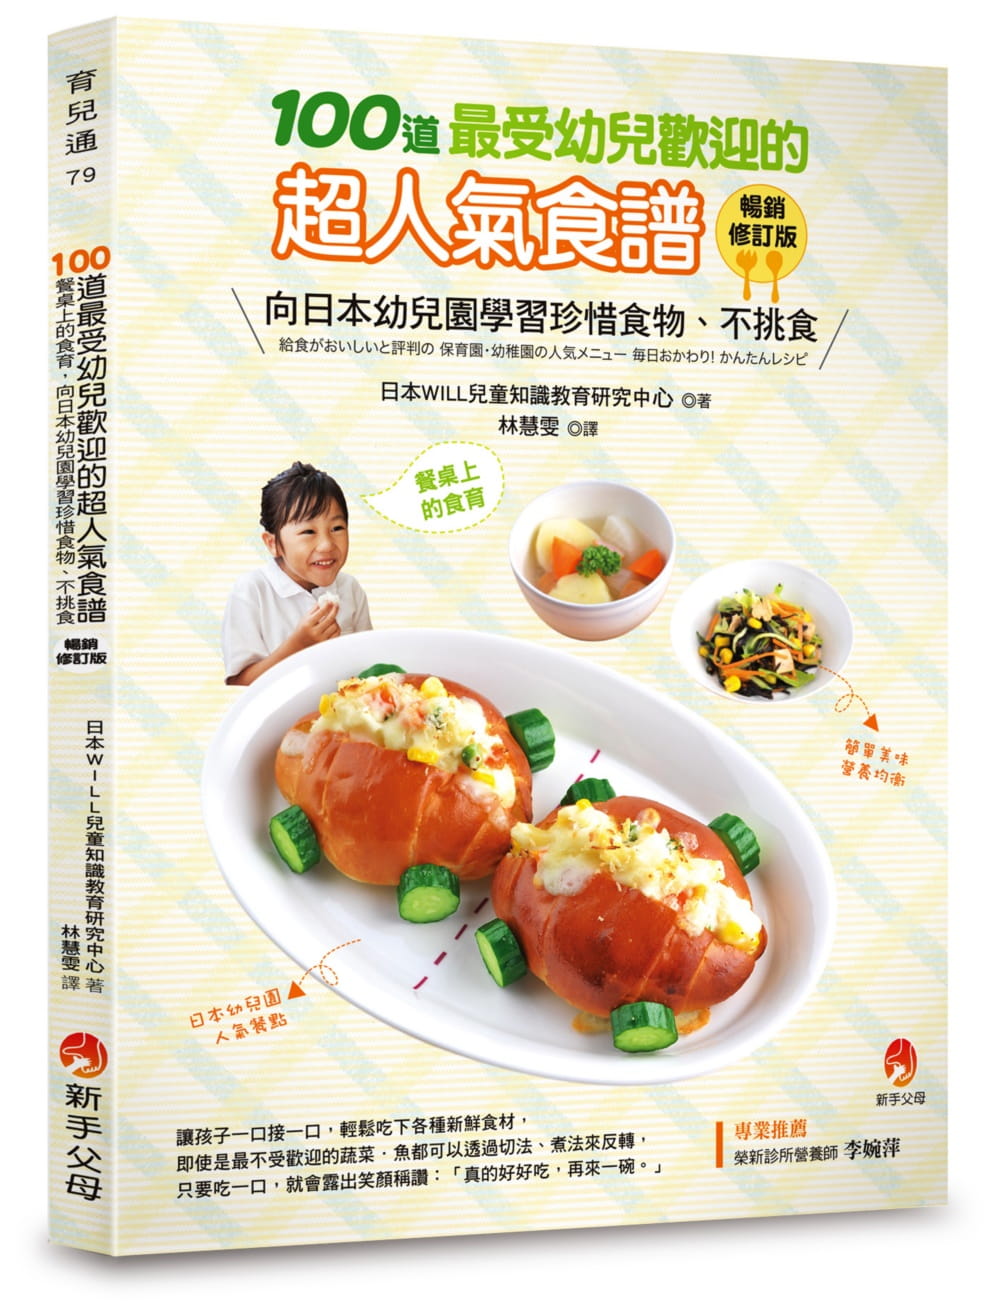 预售 日本WILL儿童知识教育研究中心 100道*受幼儿欢迎的超人气食谱畅销修订版 新手父母截图